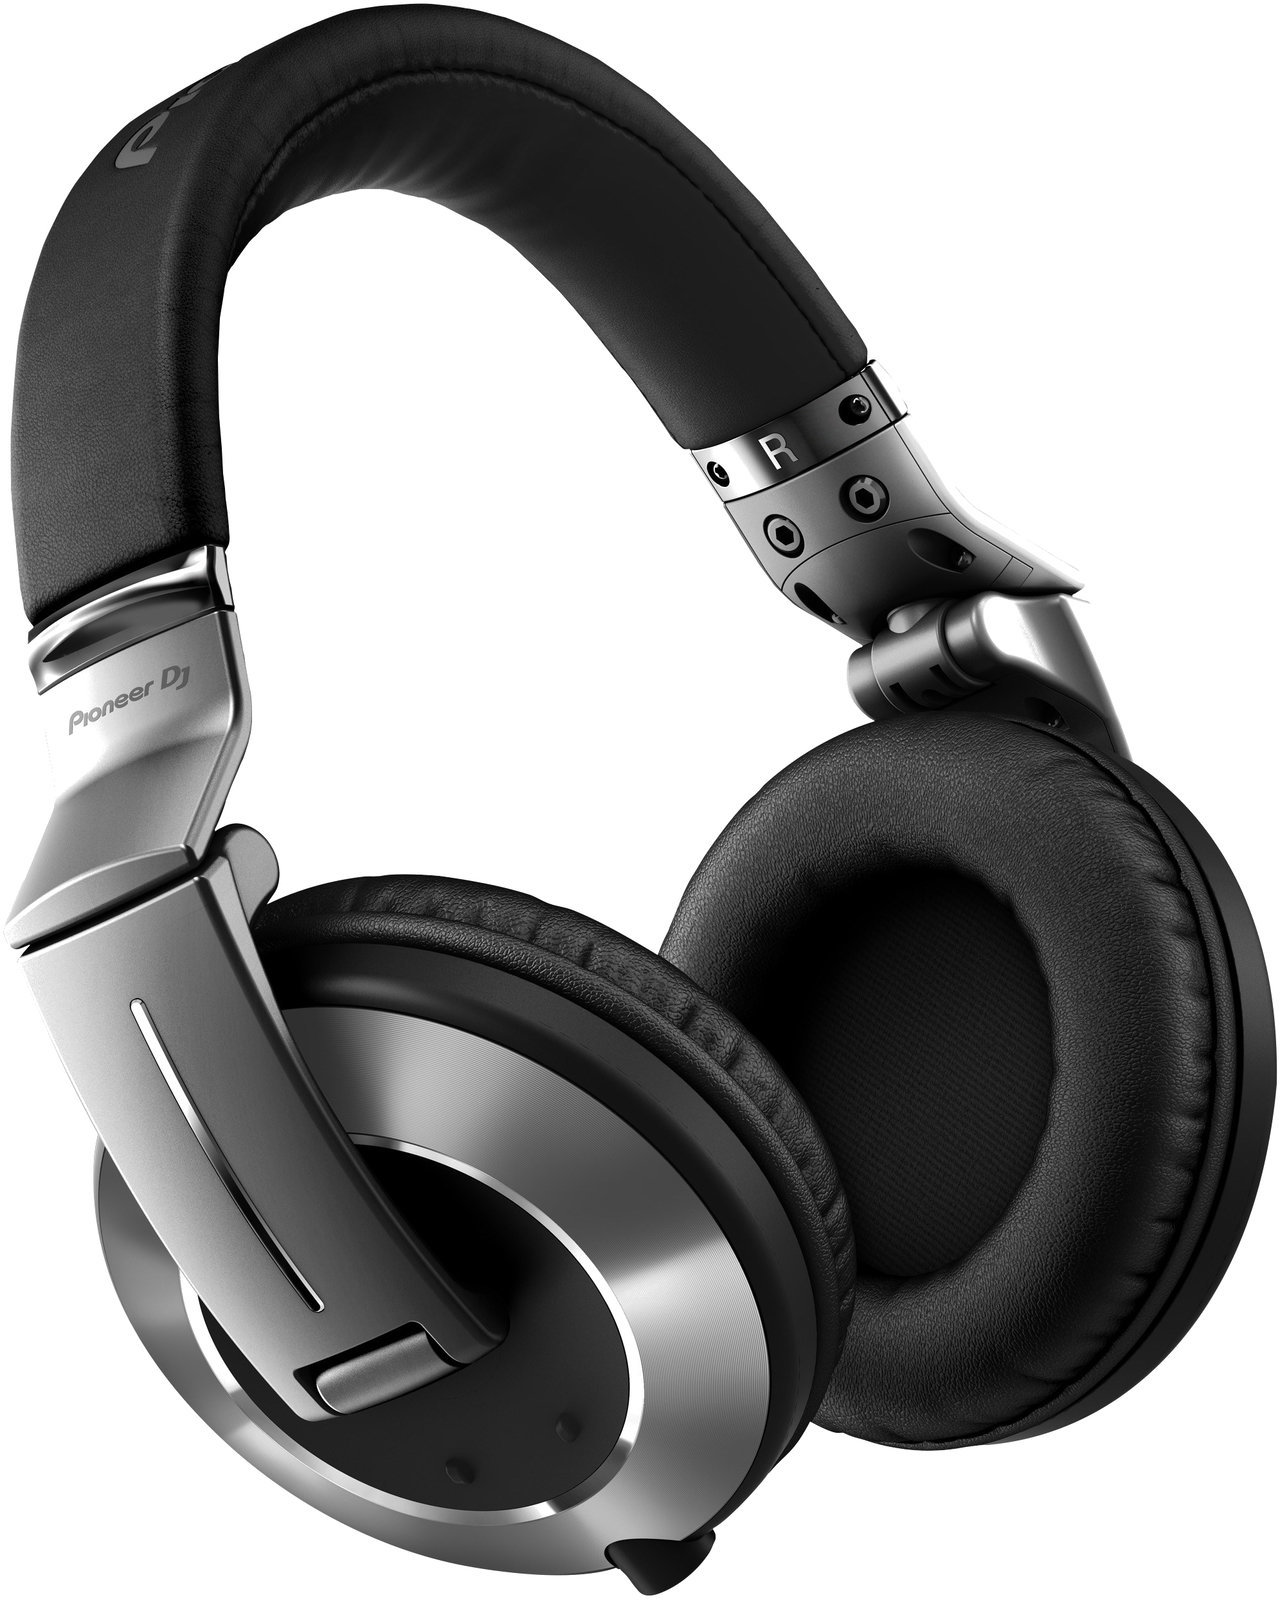 DJ Ακουστικά Pioneer Dj HDJ-2000MK2-S